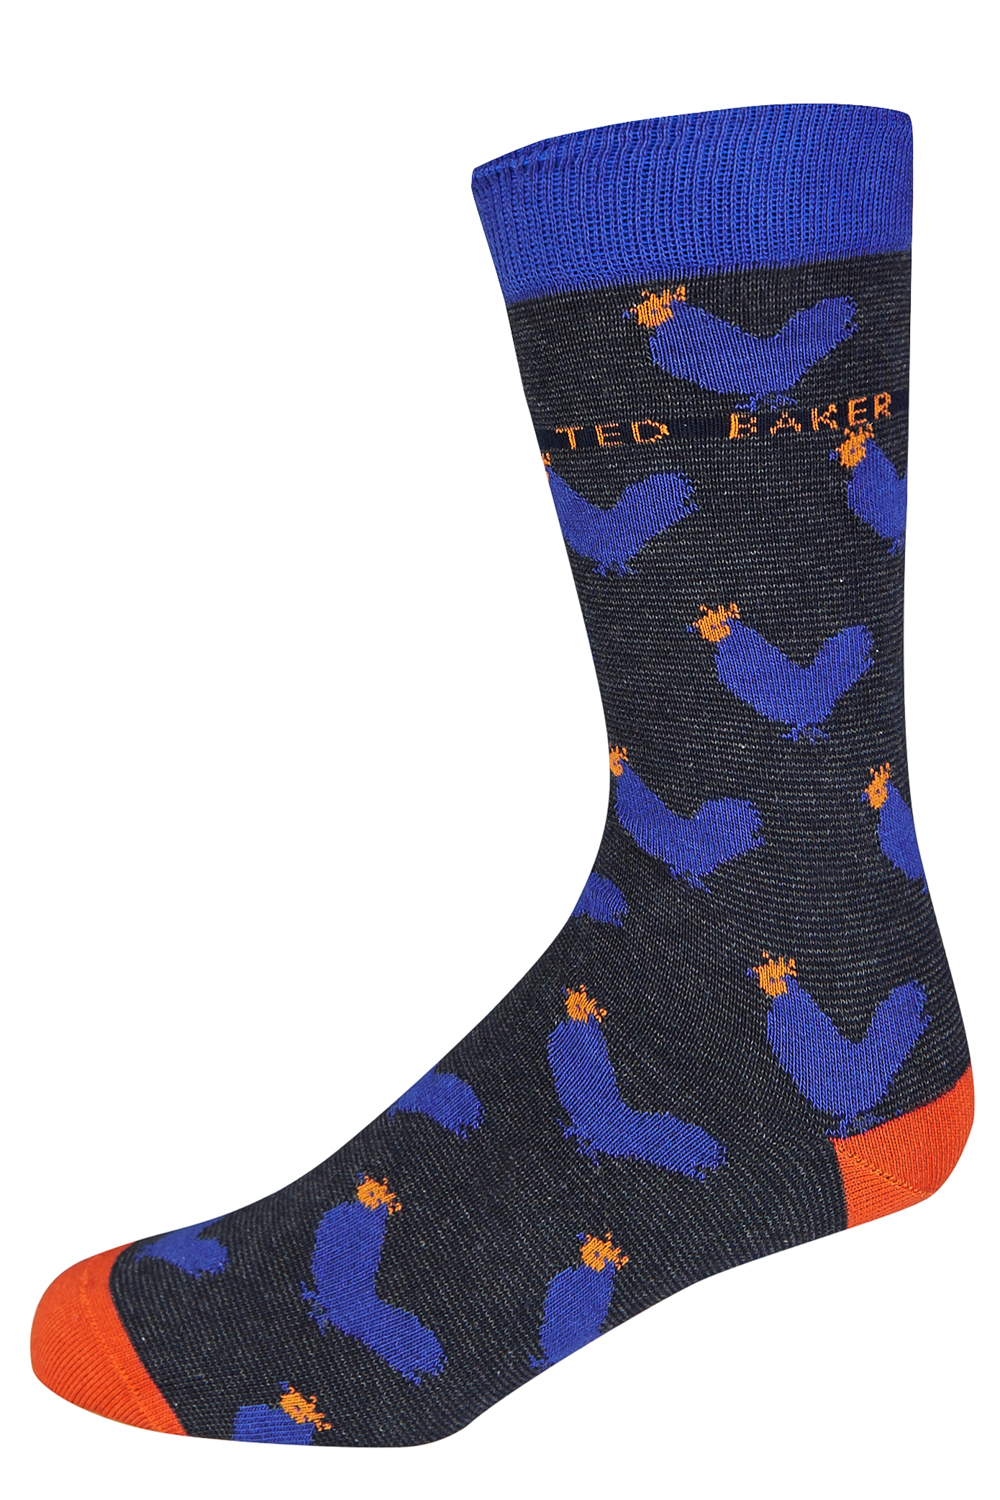 Ted Baker Blue Chicken Socks for Men - Lyst